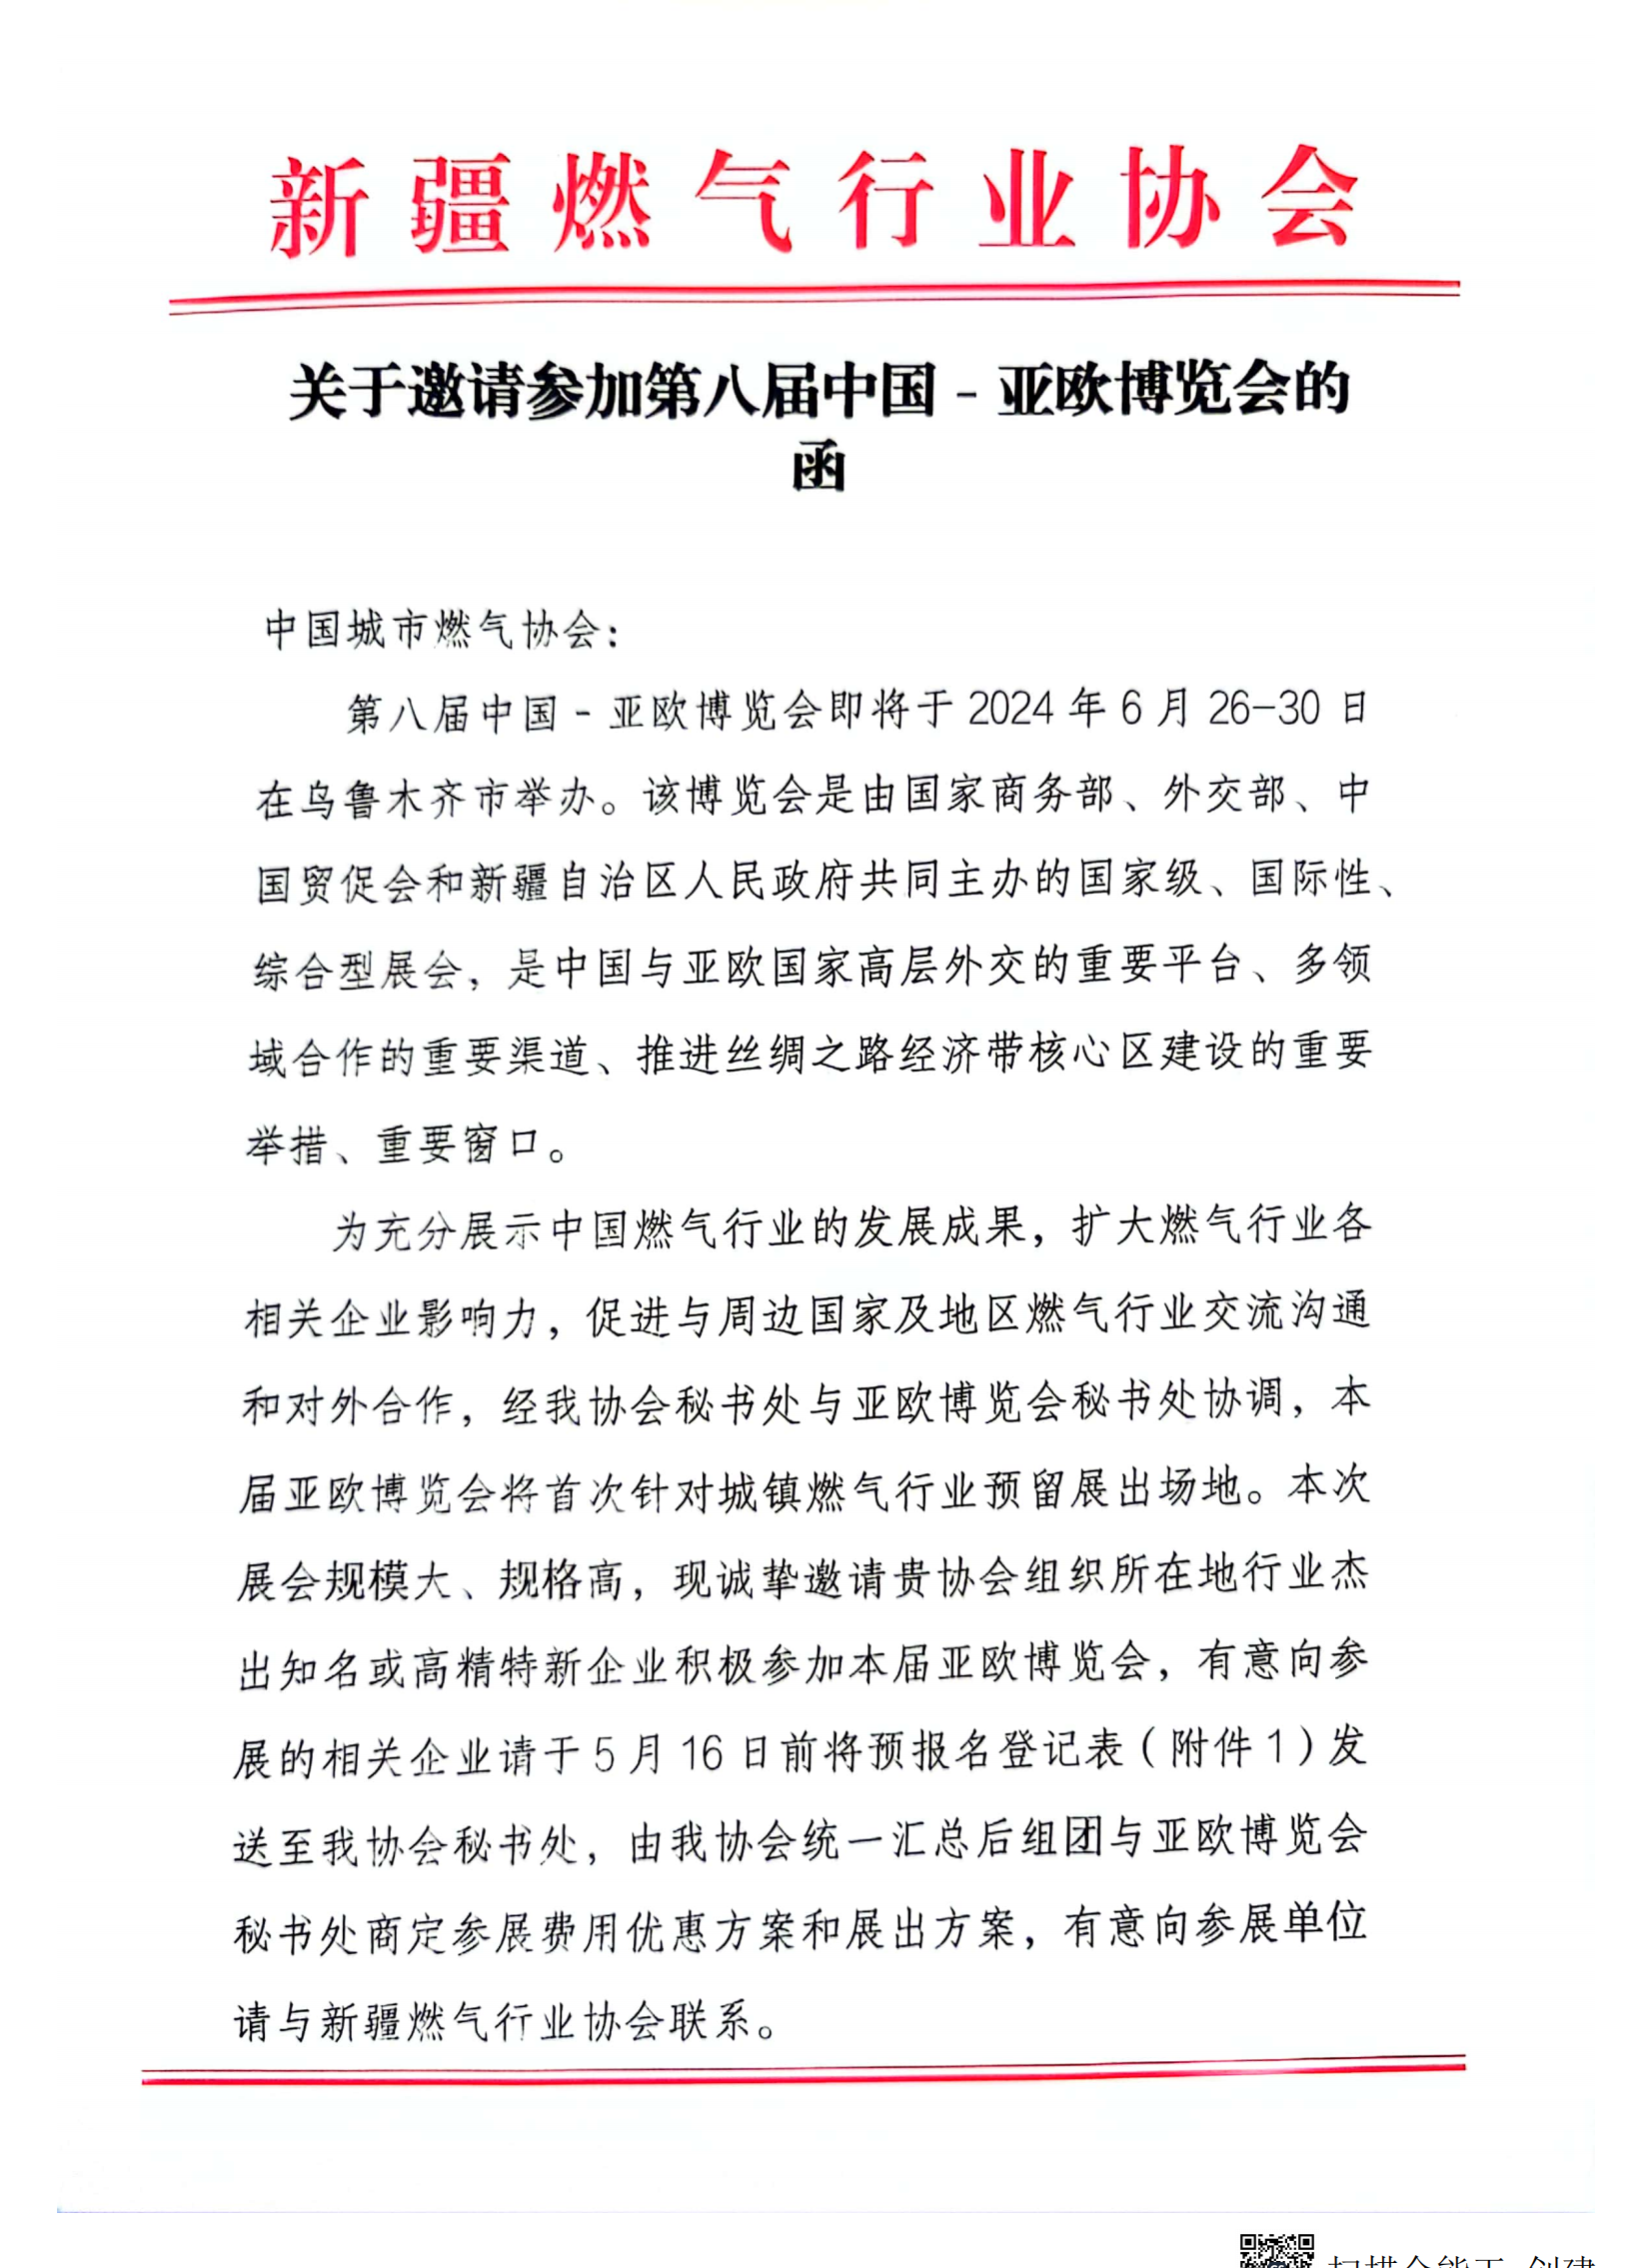 关于邀请参加第八届中国-亚欧博览会的函_00.png